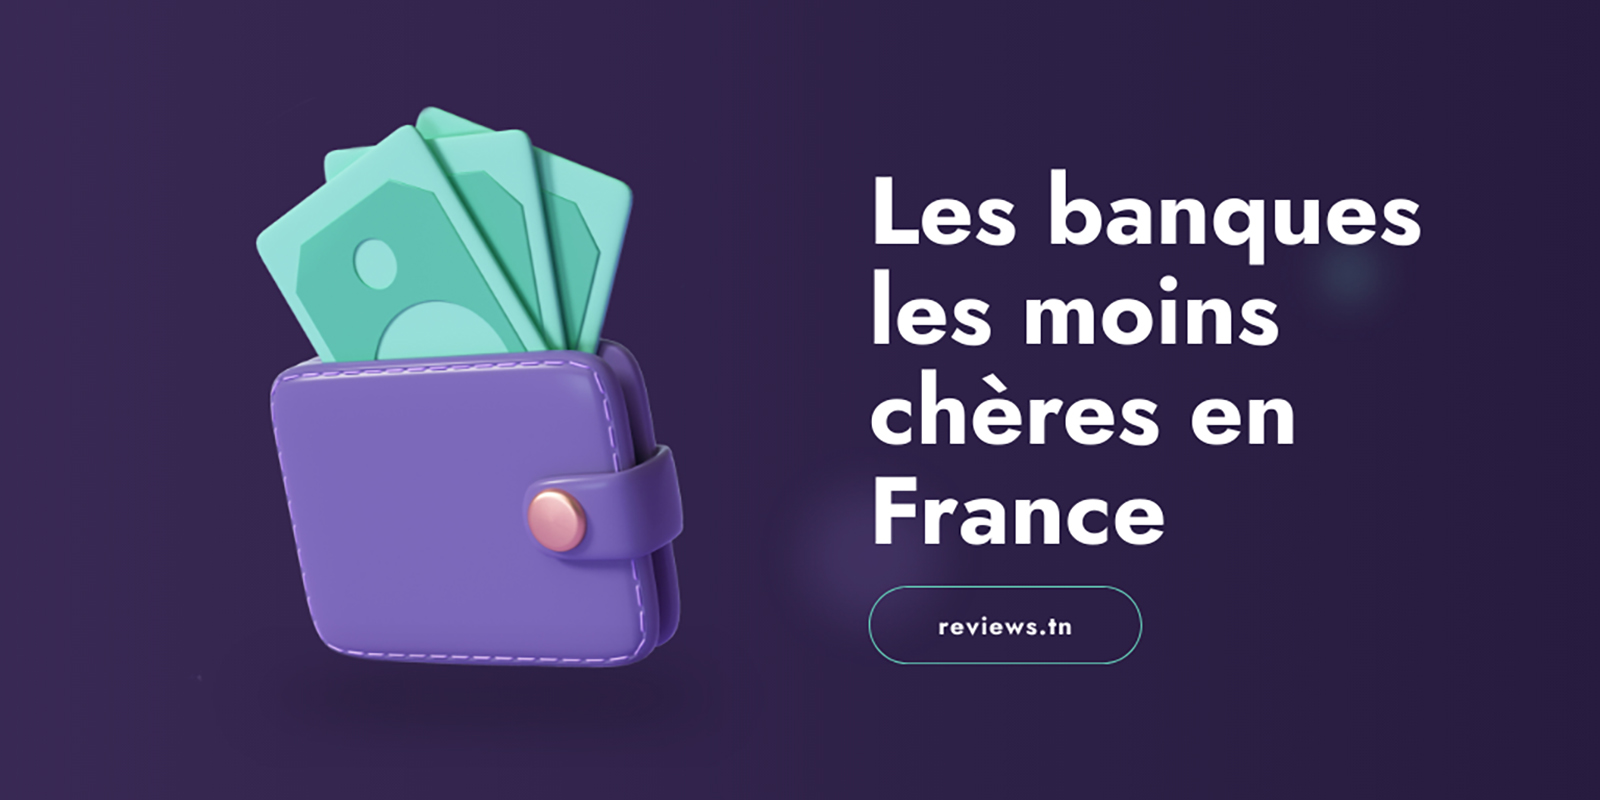 रैंकिंग: फ्रान्समा सस्तो बैंकहरू कुन हुन्?